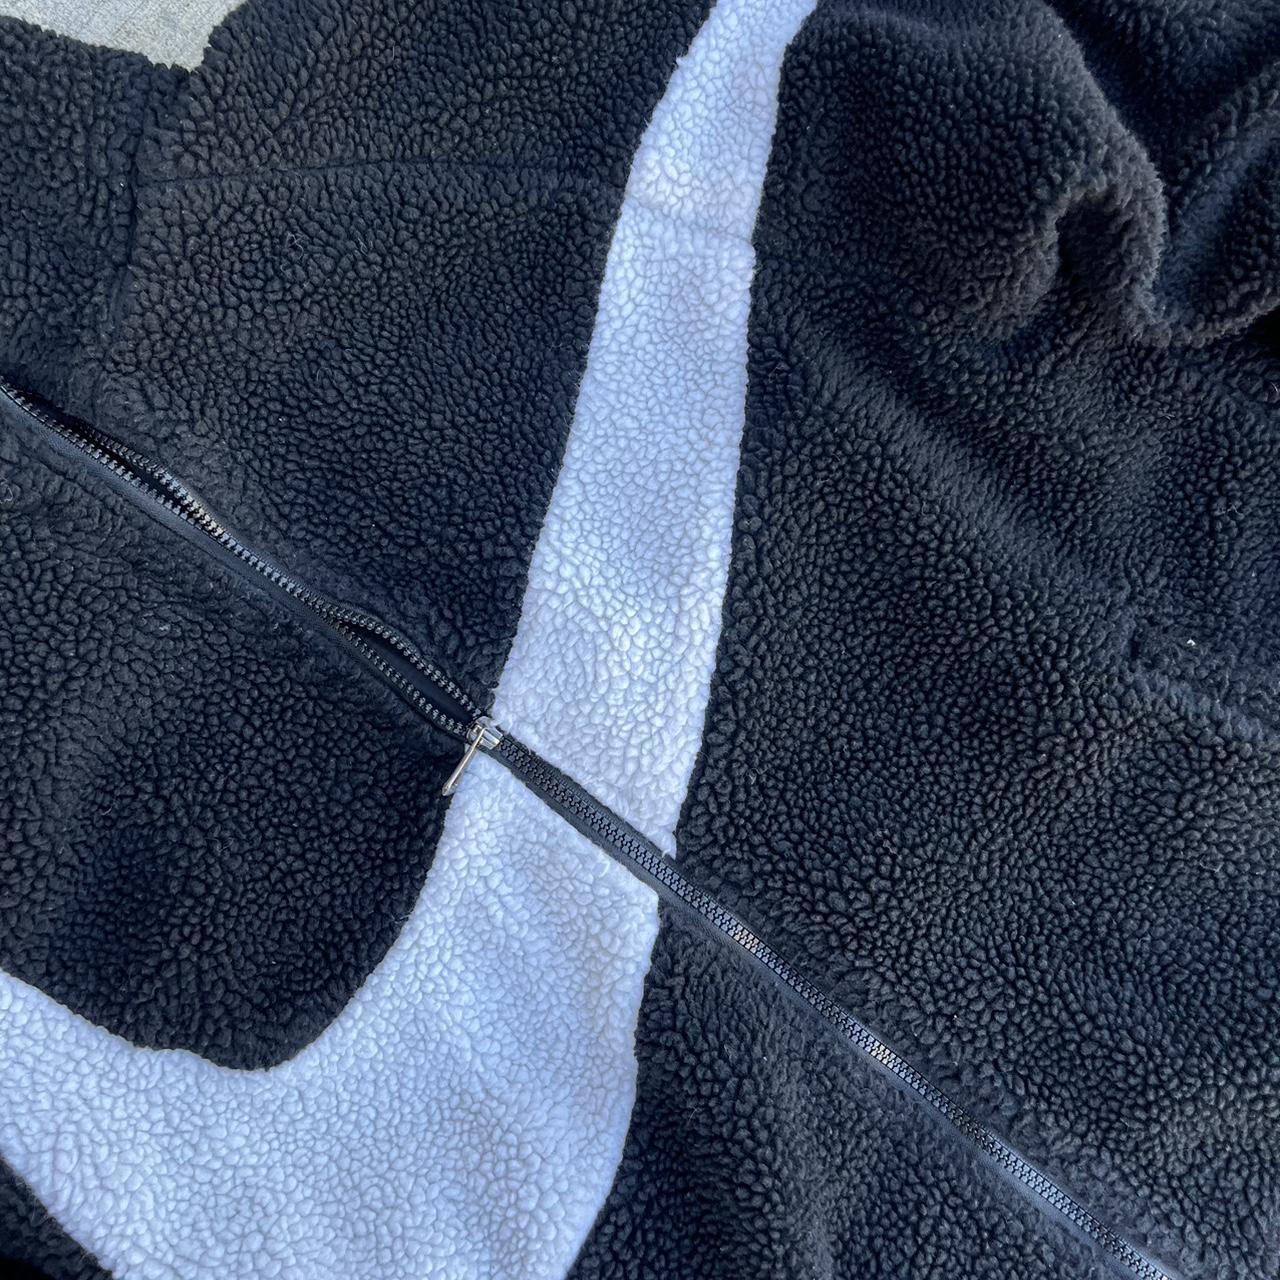 Vintage Nike Big swoosh Full zip Fleece XL Super... - Depop